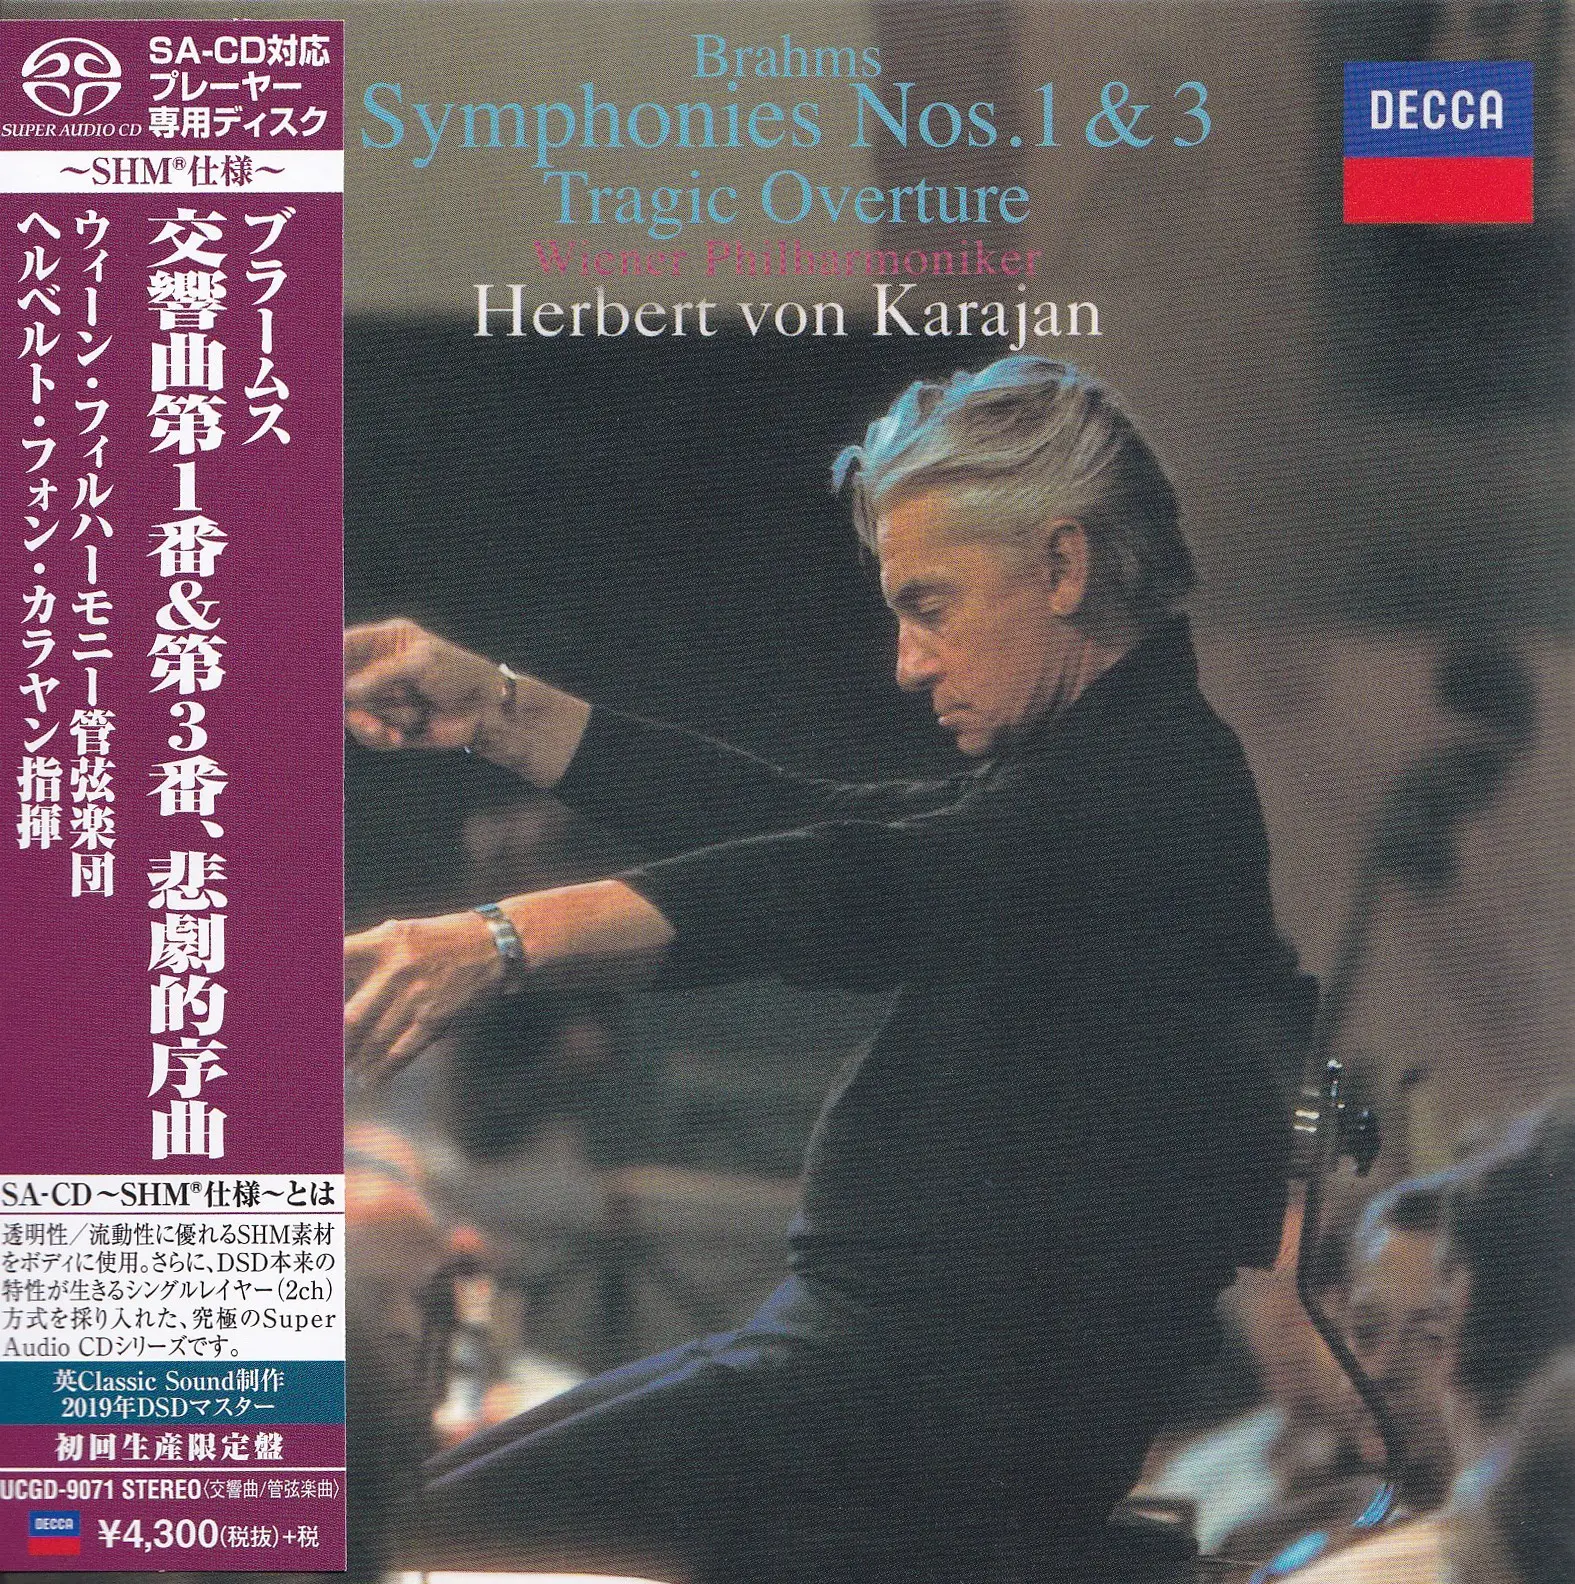 Herbert von Karajan, Wiener Philharmoniker - Brahms: Symphonies 1 & 3; Tragic Overture (1960 & 1962) [Japan 2019] [SACD ISO + DSF DSD64 + Hi-Res FLAC] Download